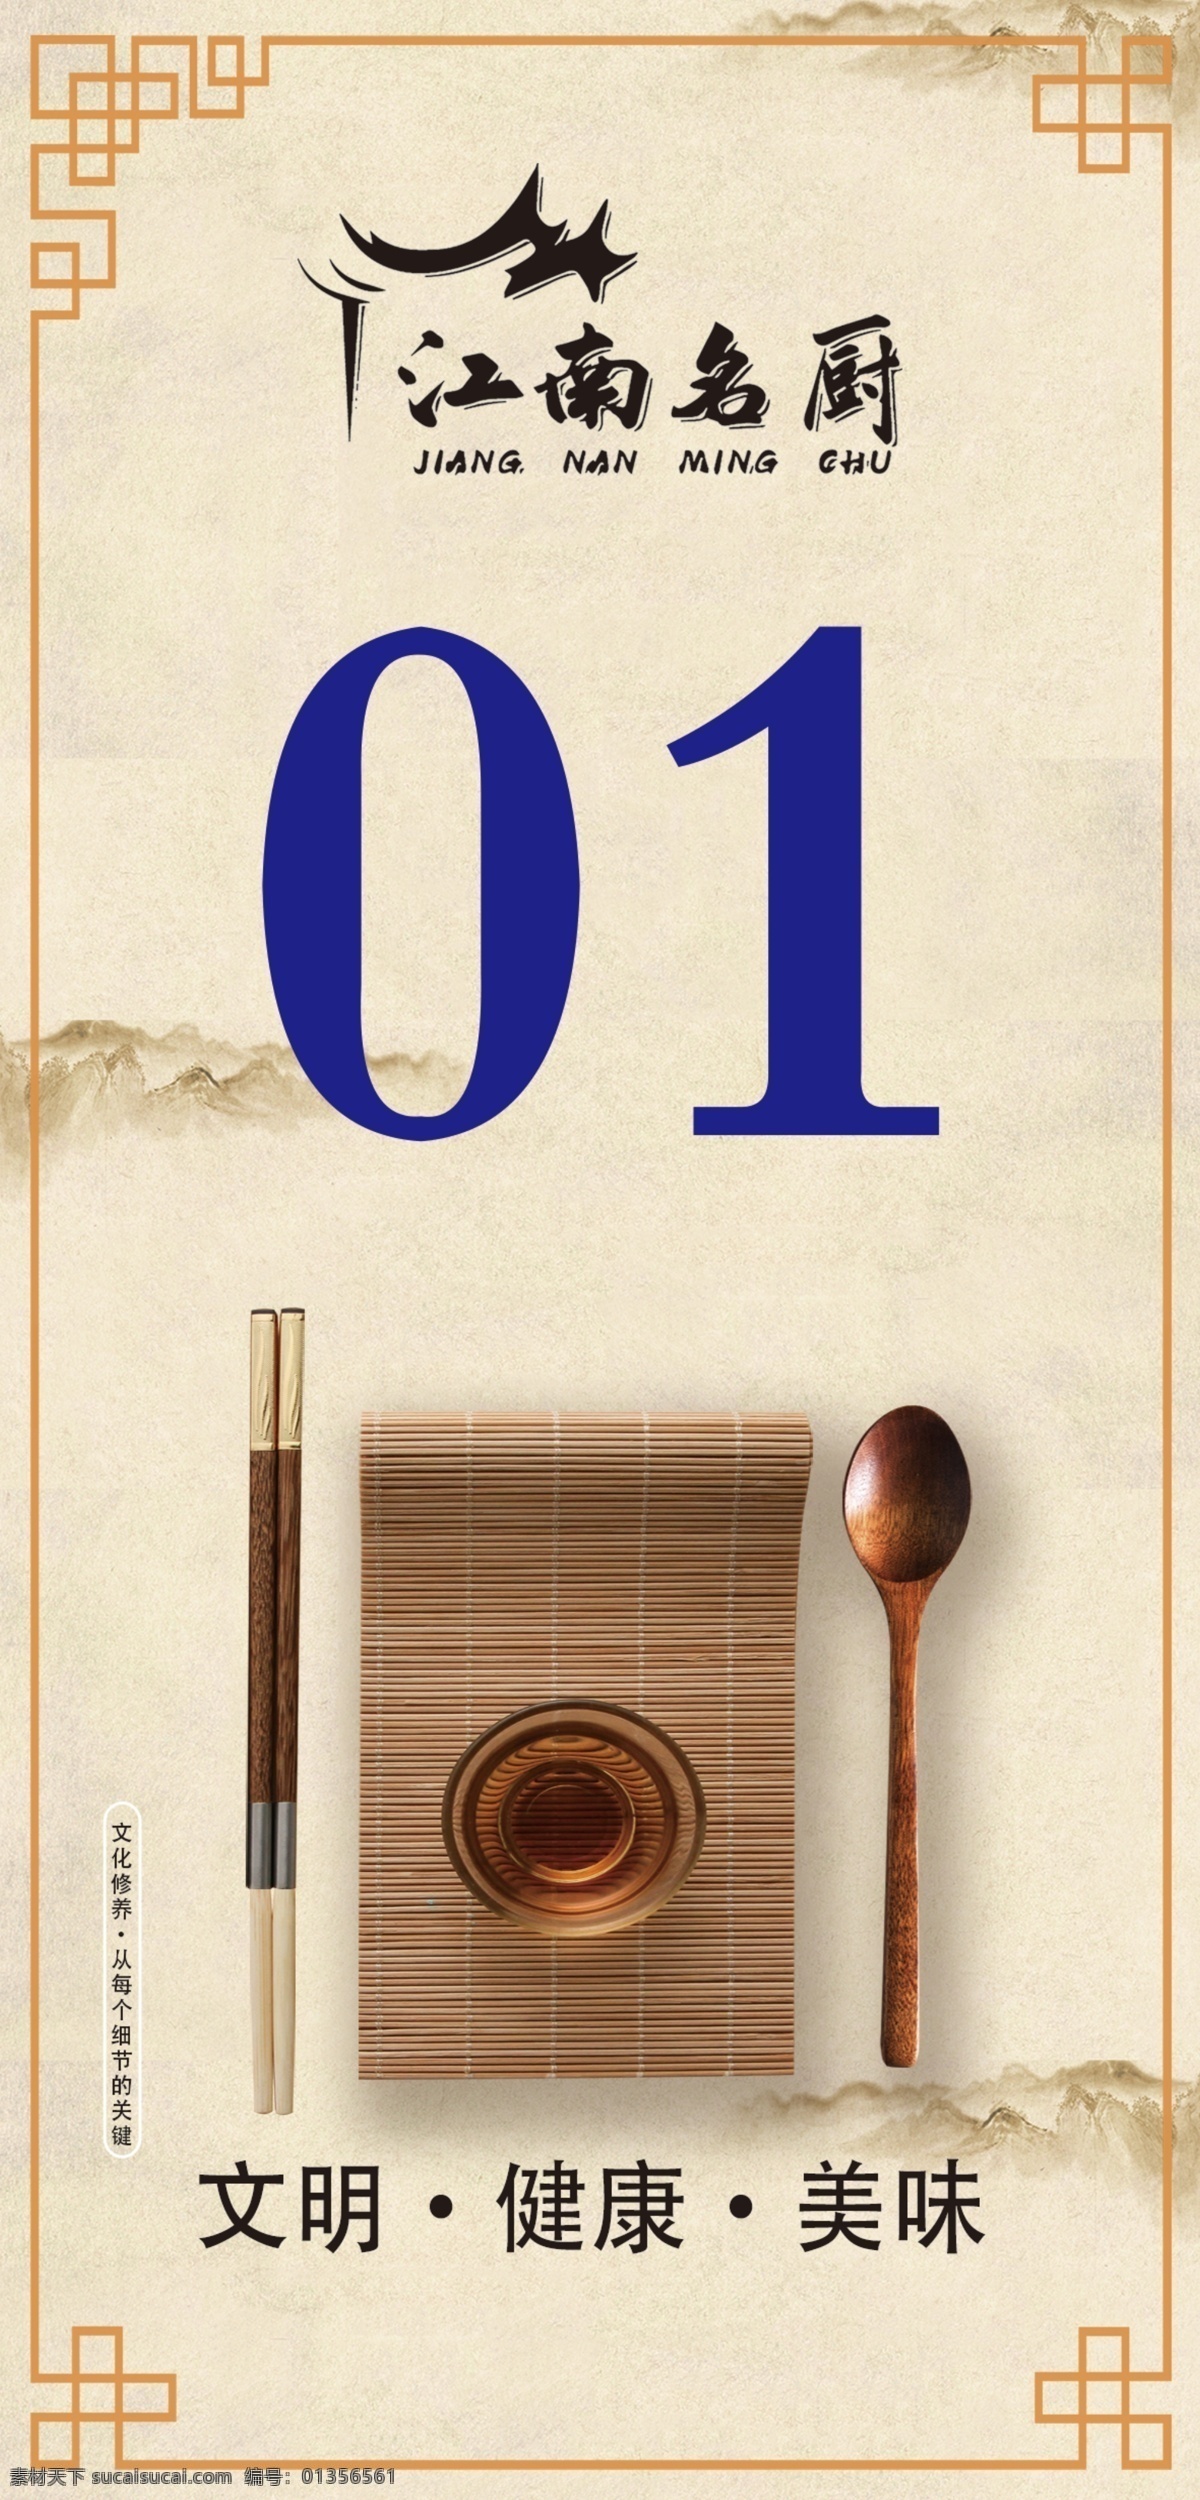 桌牌图片 餐厅桌牌 公勺公筷 logo设计 中式边框 简约台卡